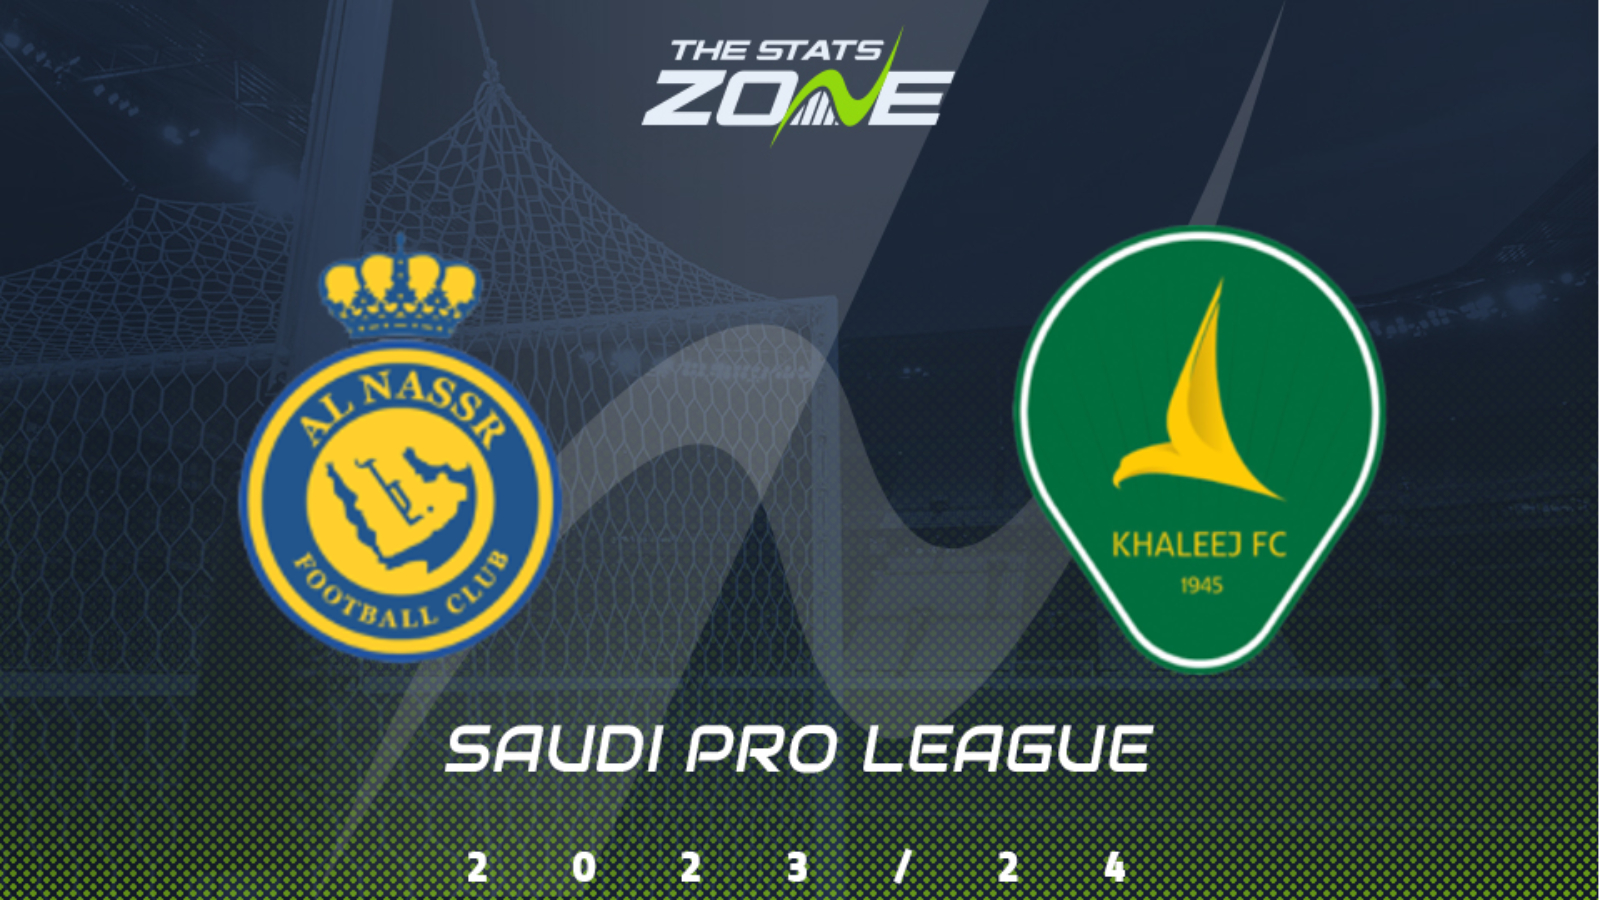 Saudi Pro League logo. Saudi Pro League standings. Saudi Pro League logo без фона. Saudi pro league